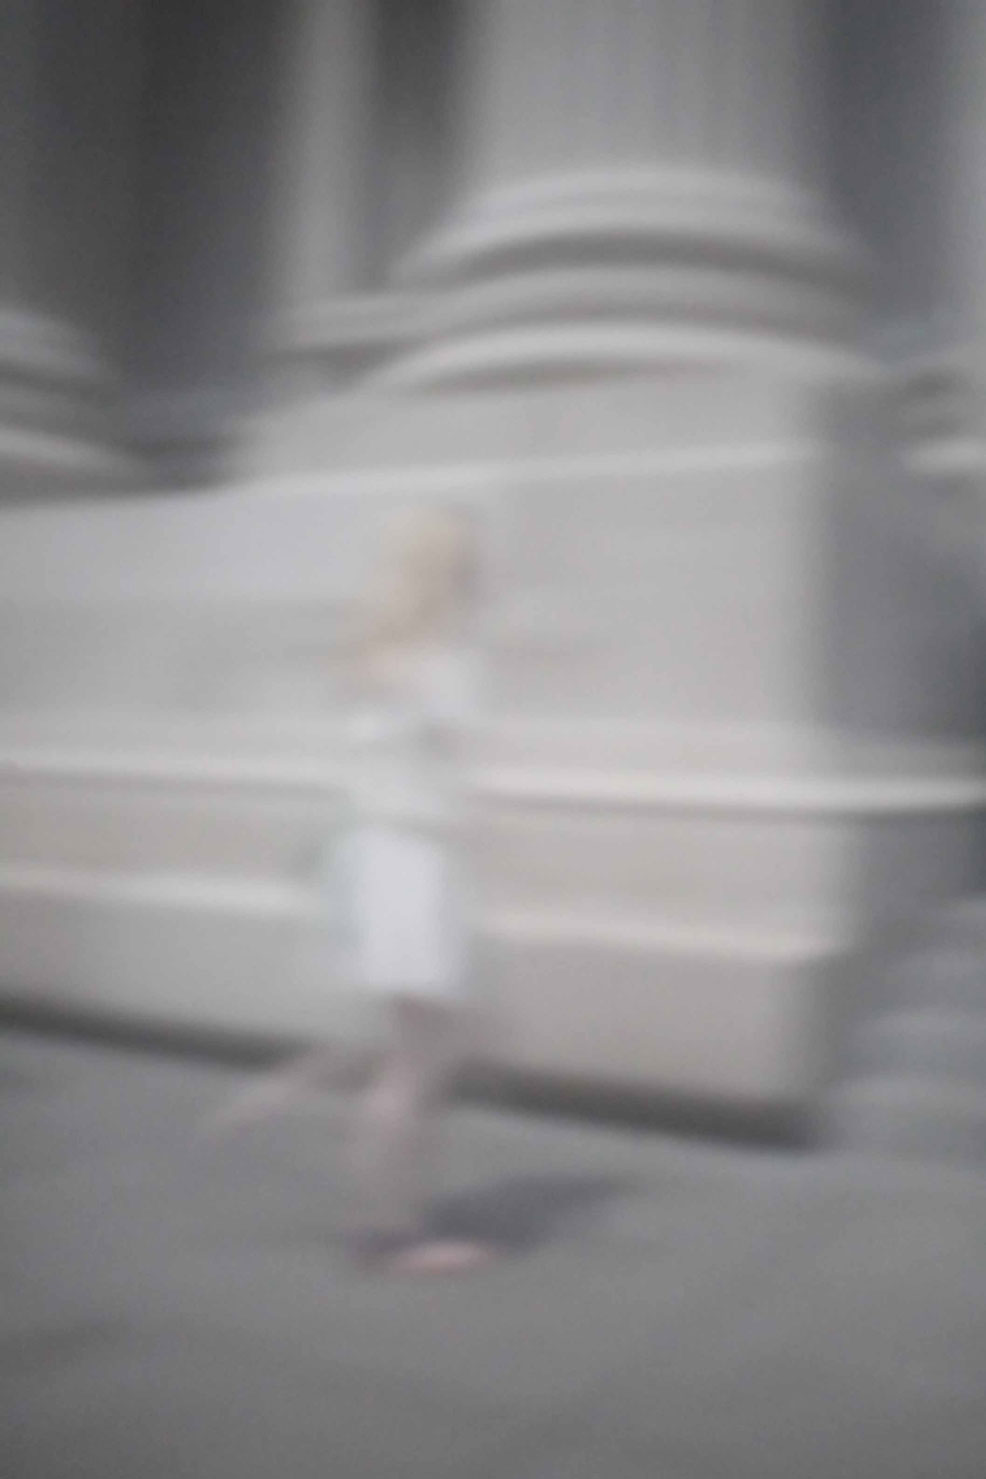 37 „Weißes Kleid vor Metropolitan Museum“, 2012, New York, Camera Obscura, Pigmentdruck auf Alu-Dibond